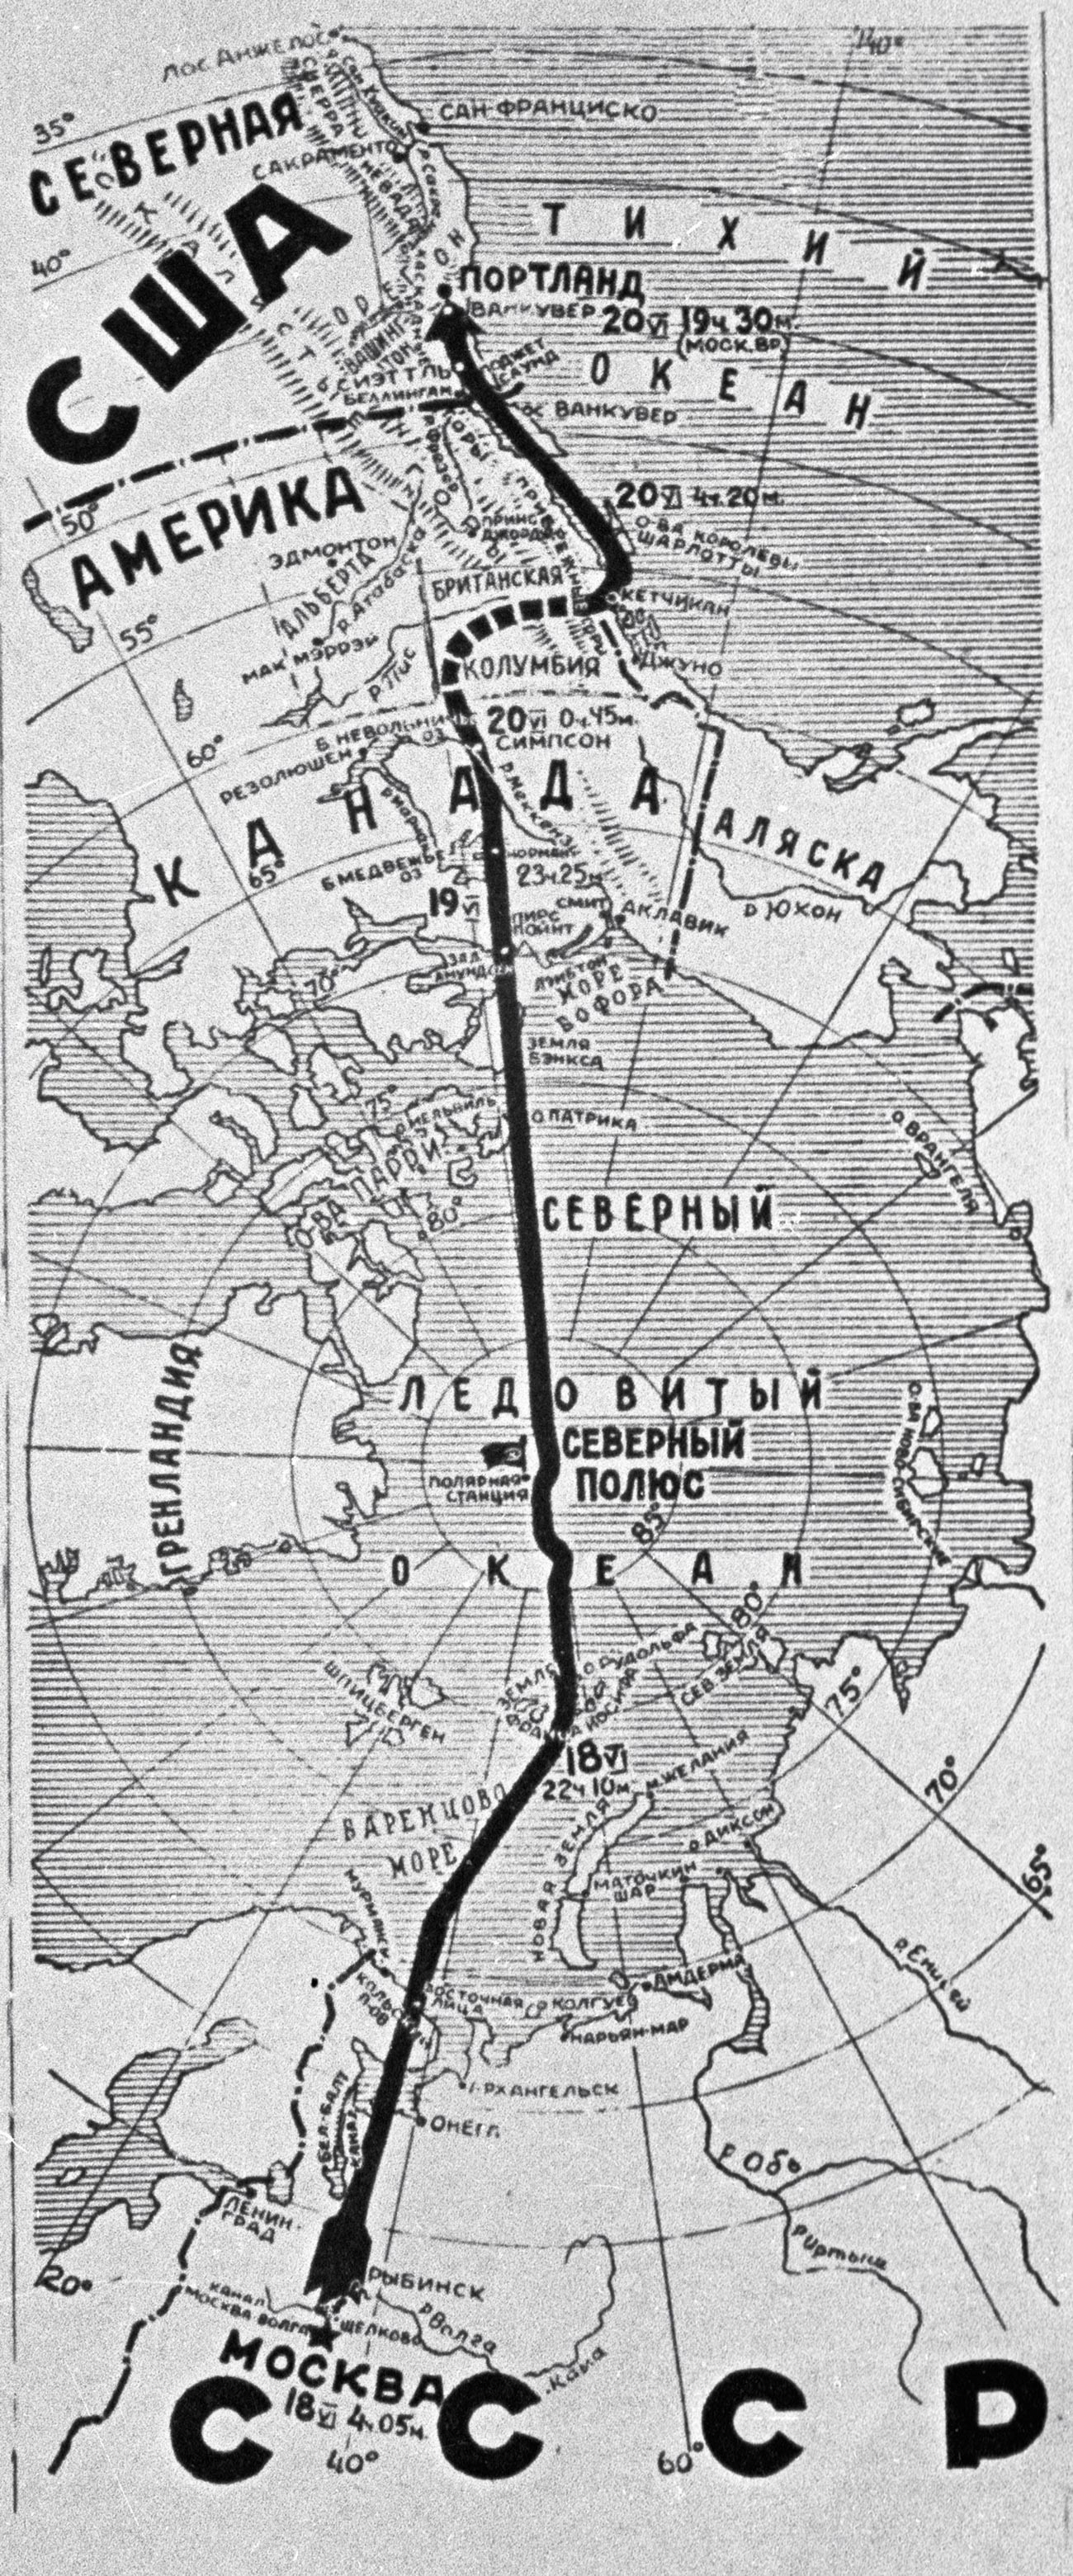 Chkálov voló desde Moscú hasta Vancouver (Washington), a través del Polo Norte